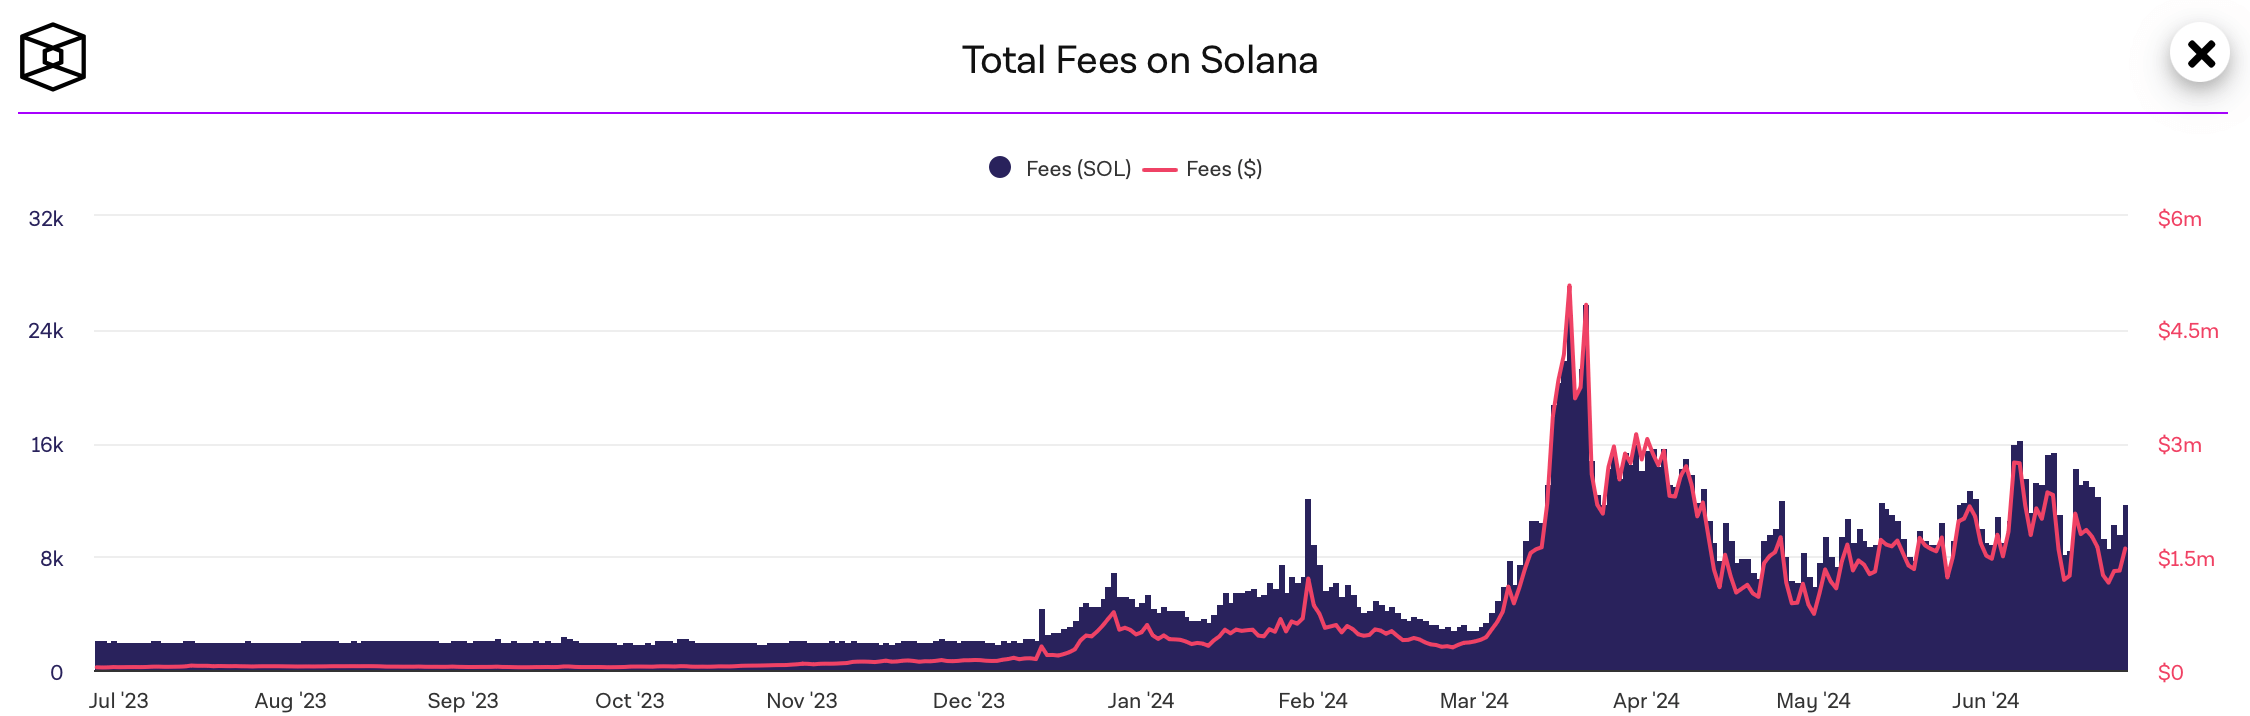 Как Solana стала популярной? Объём выплаченных комиссий в сети Solana. Фото.